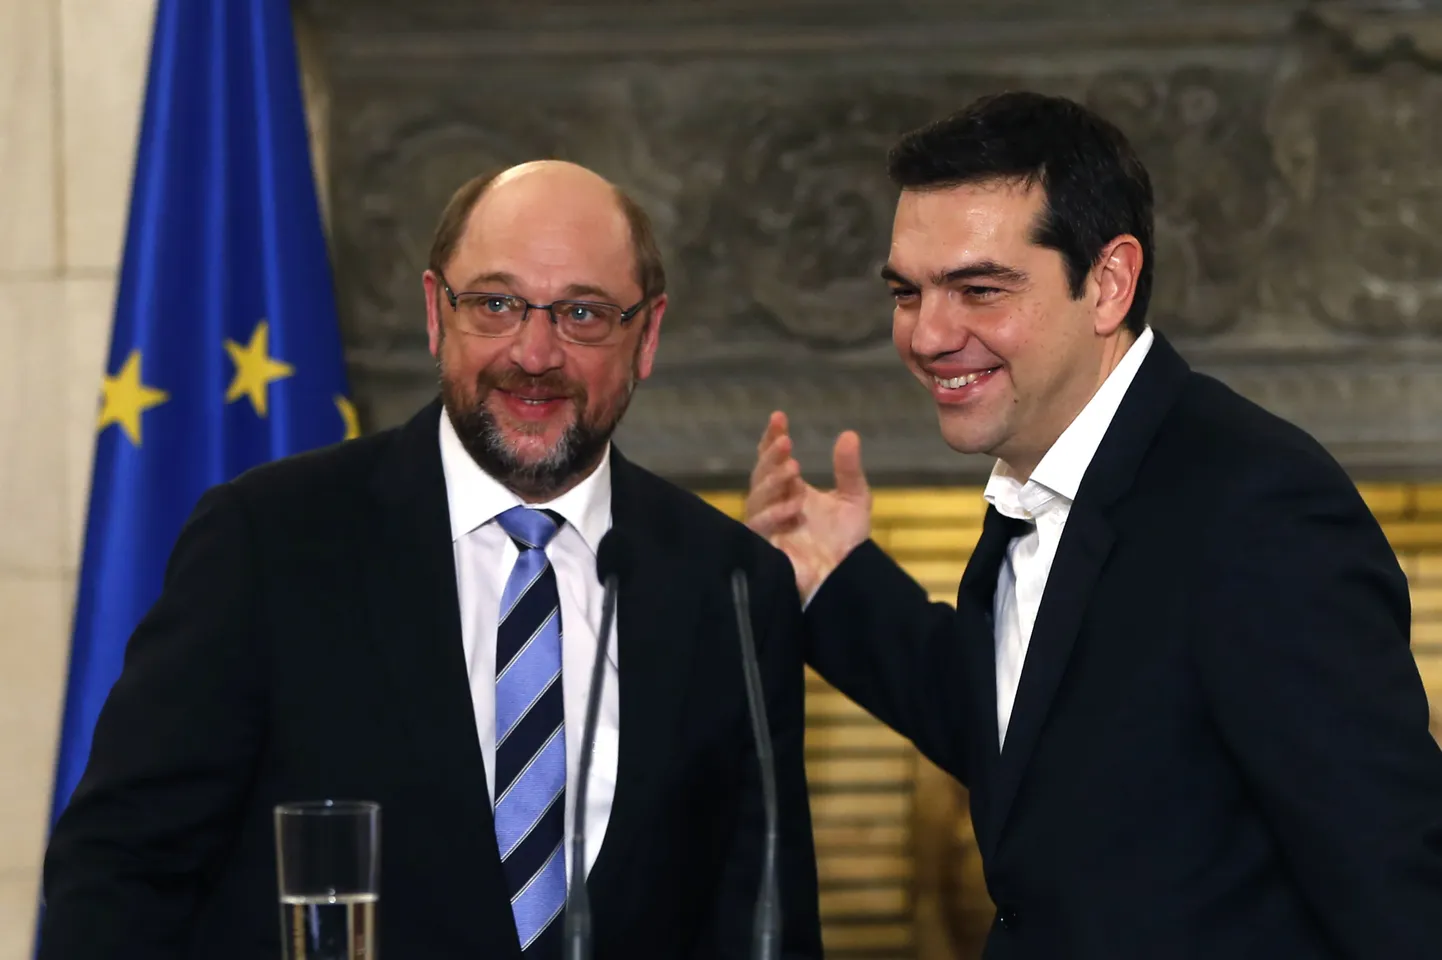 Kreeka peaminister Alexis Tsipras (paremal) ja Euroopa Parlamendi president Martin Schulz üleeile Ateenas.